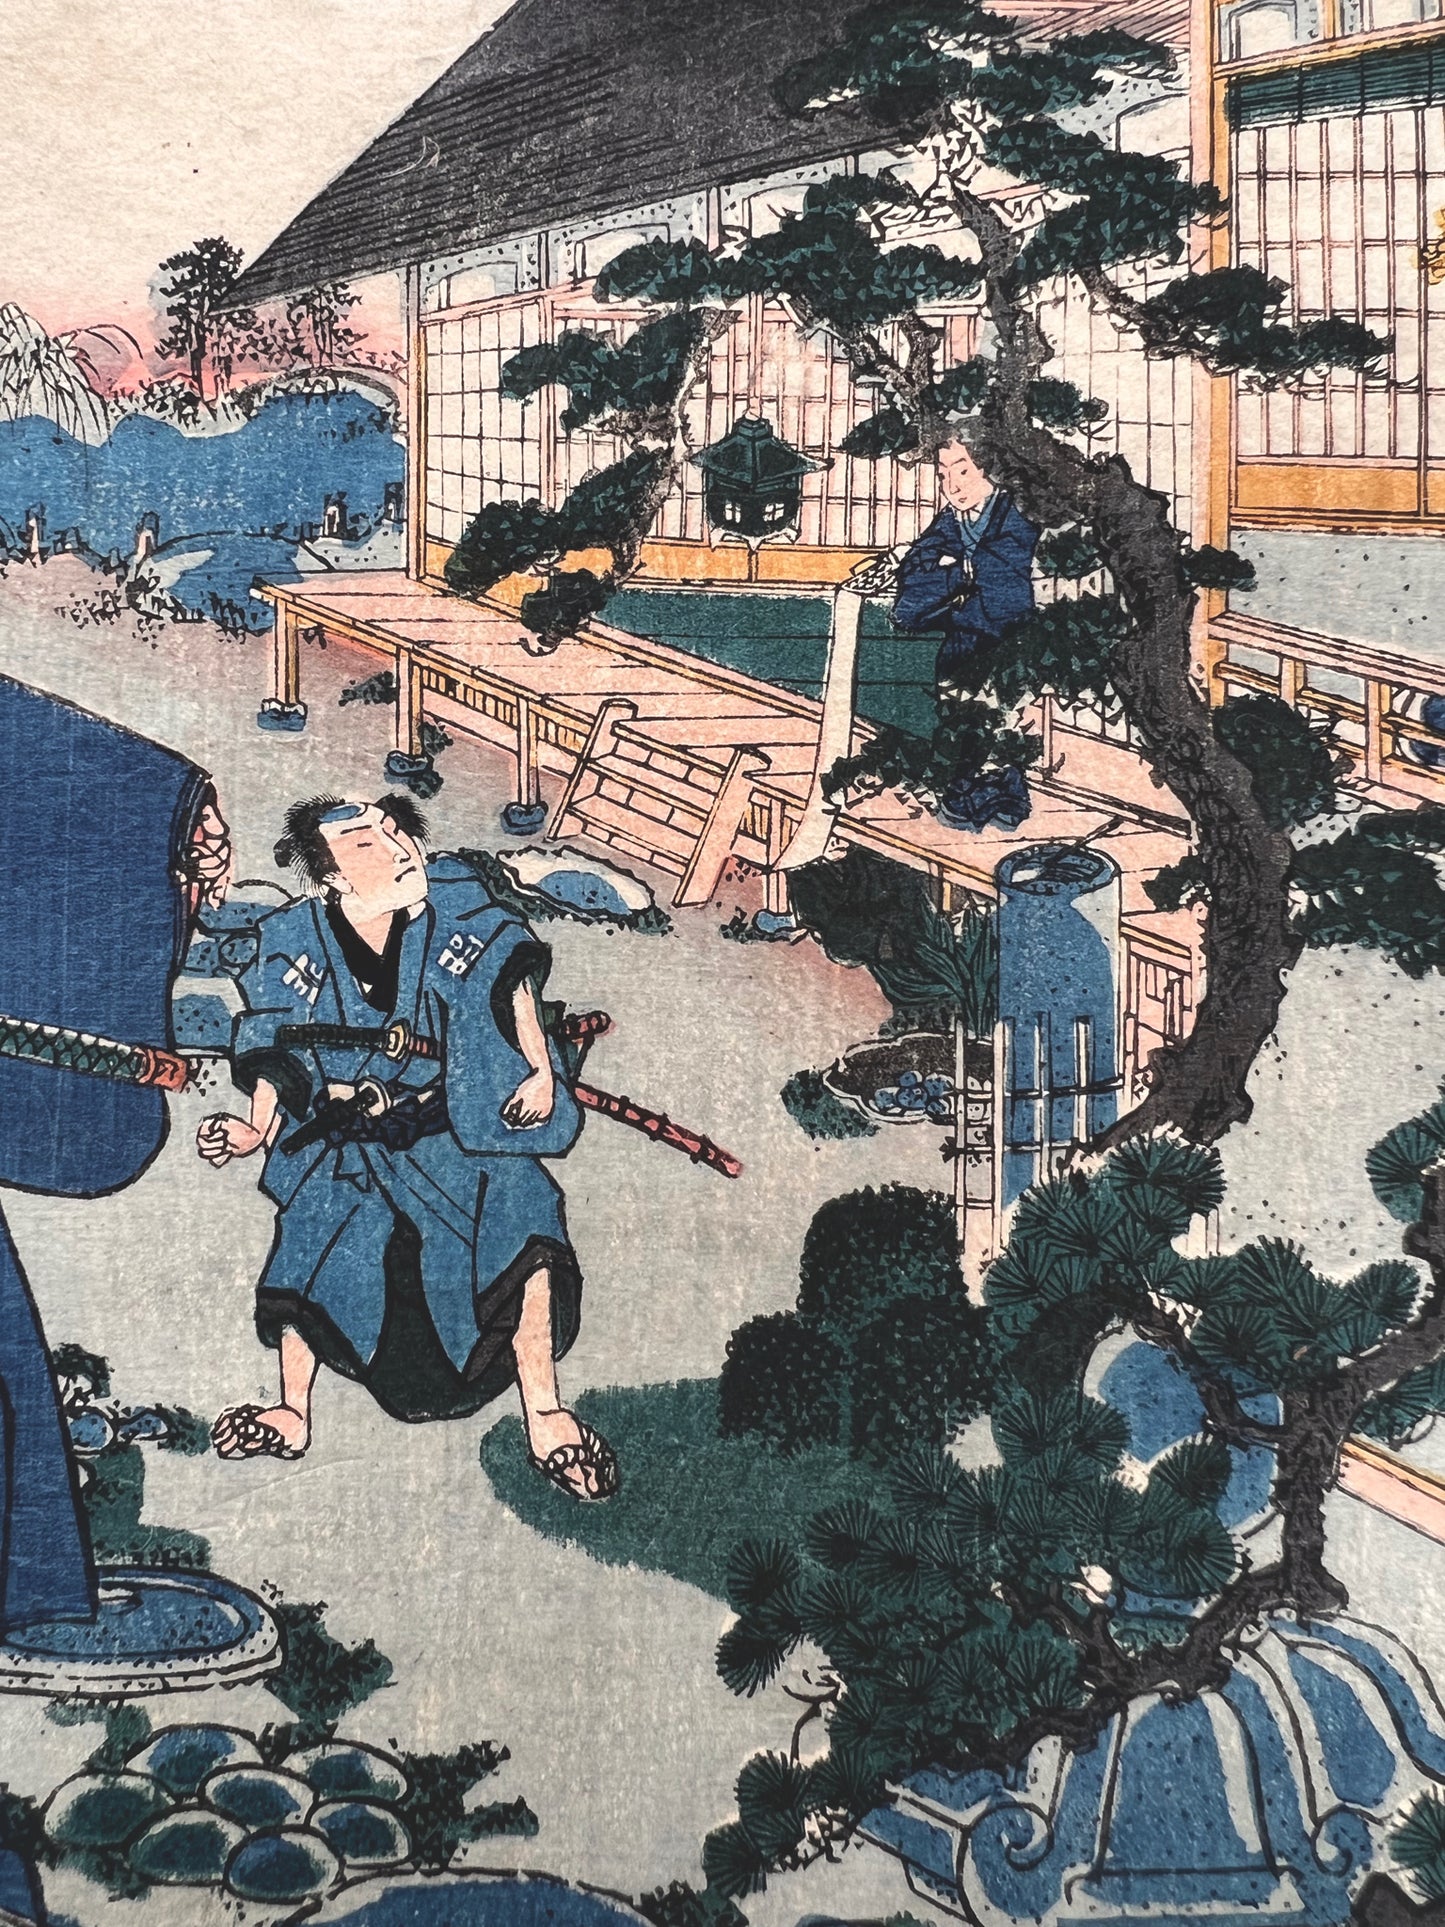 estampe japonaise rencontre discrete de samourai ronin dans la cour intérieure d'une maison de thé, samourai avec sabre